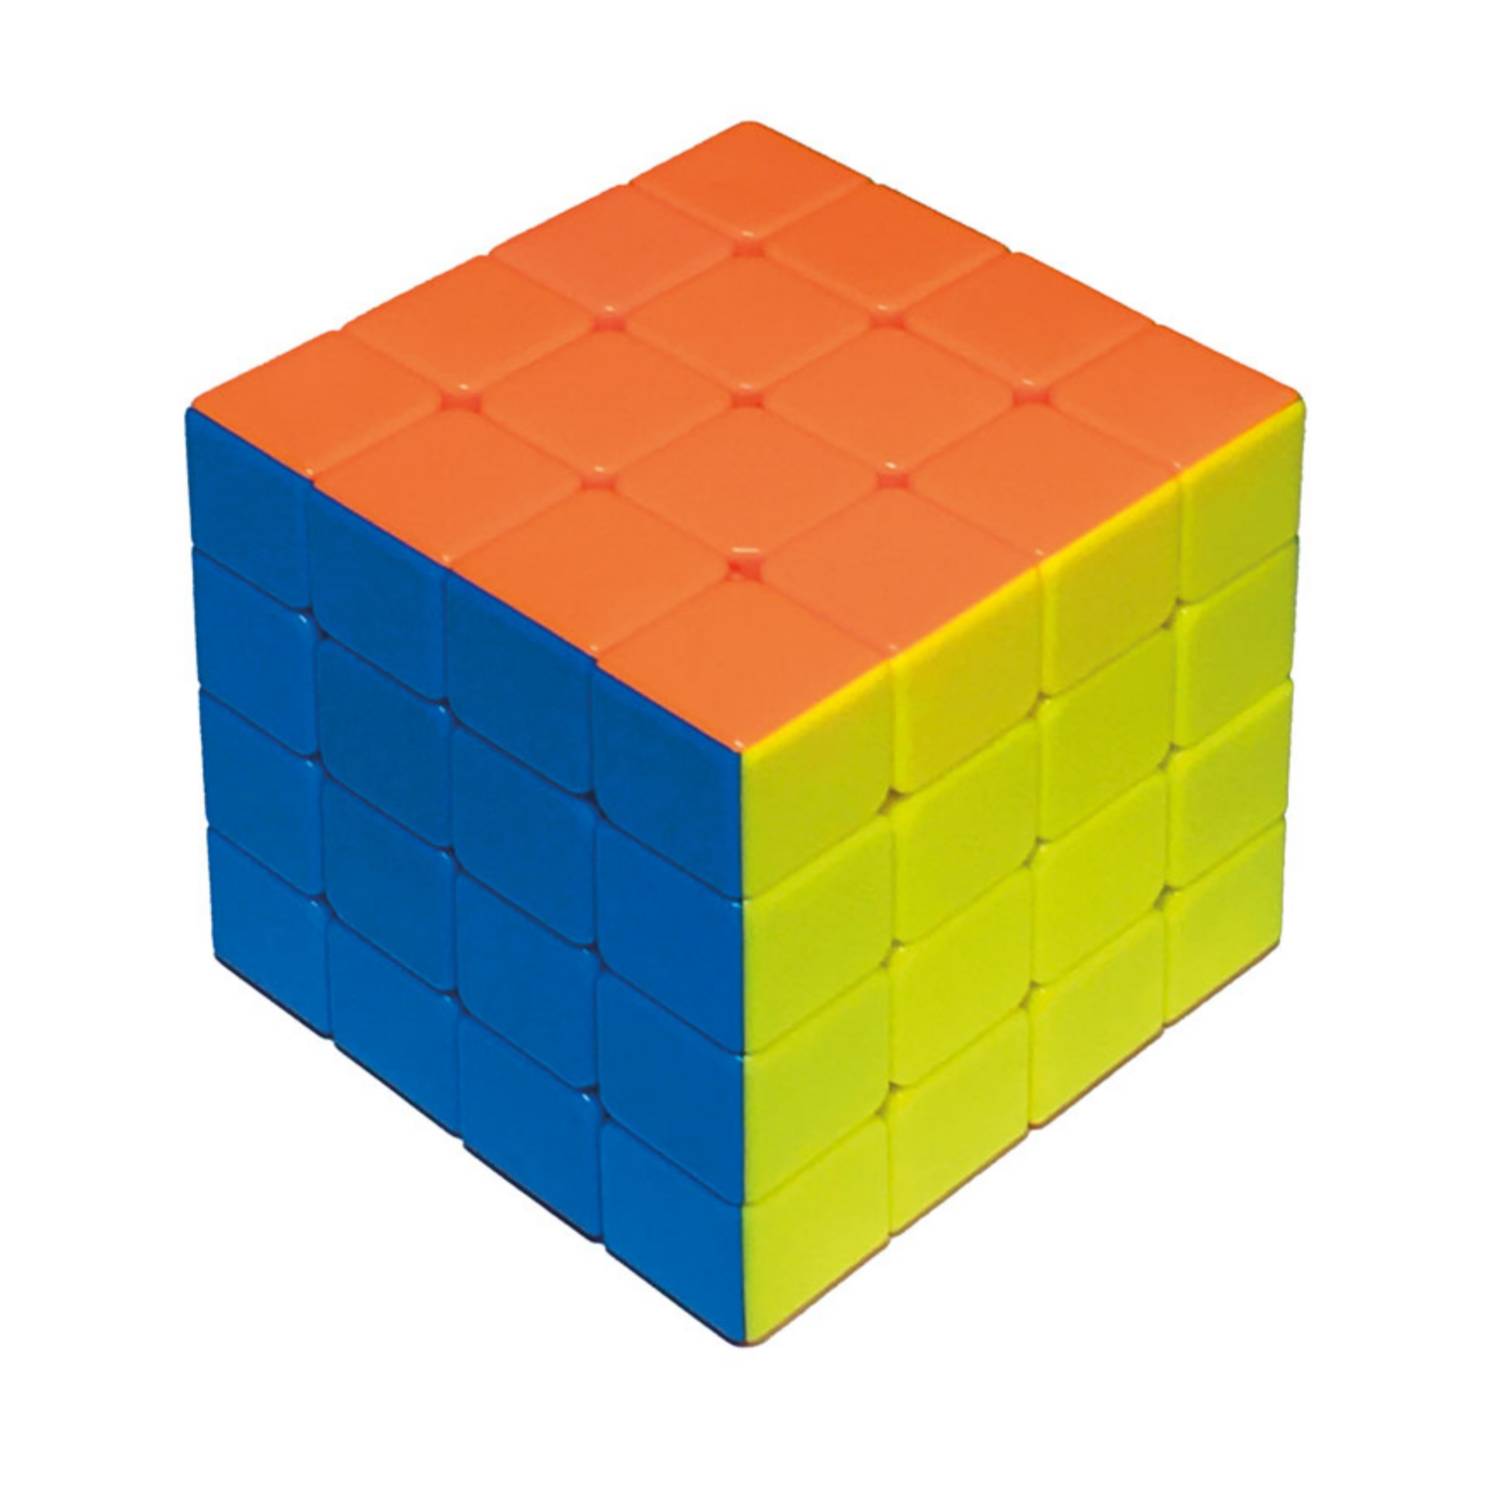 Cubo De Rubik 4x4 Precio GENERICO Cubo 4x4 Magico 63 Mm Colores De Calidad | falabella.com